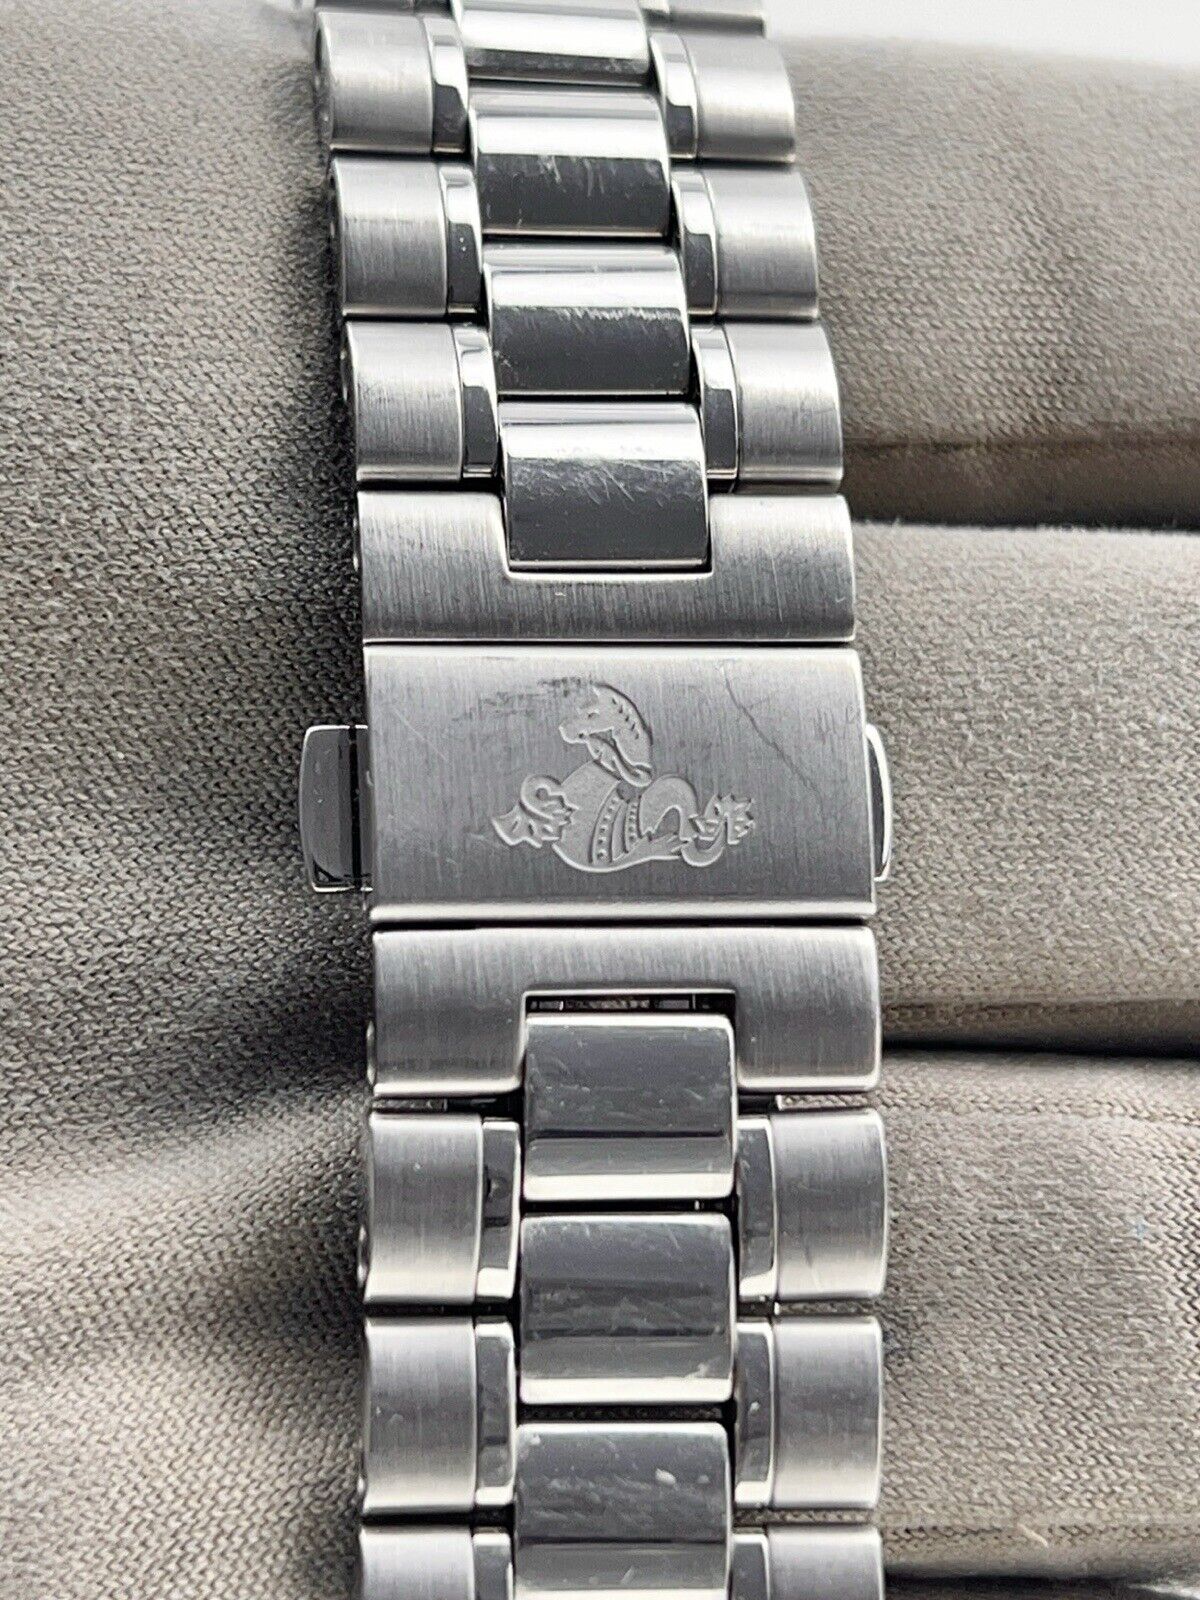 Omega Speedmaster Steel 38mm Diamond Automatic Unisex Watch 324.30.38.50.55.001